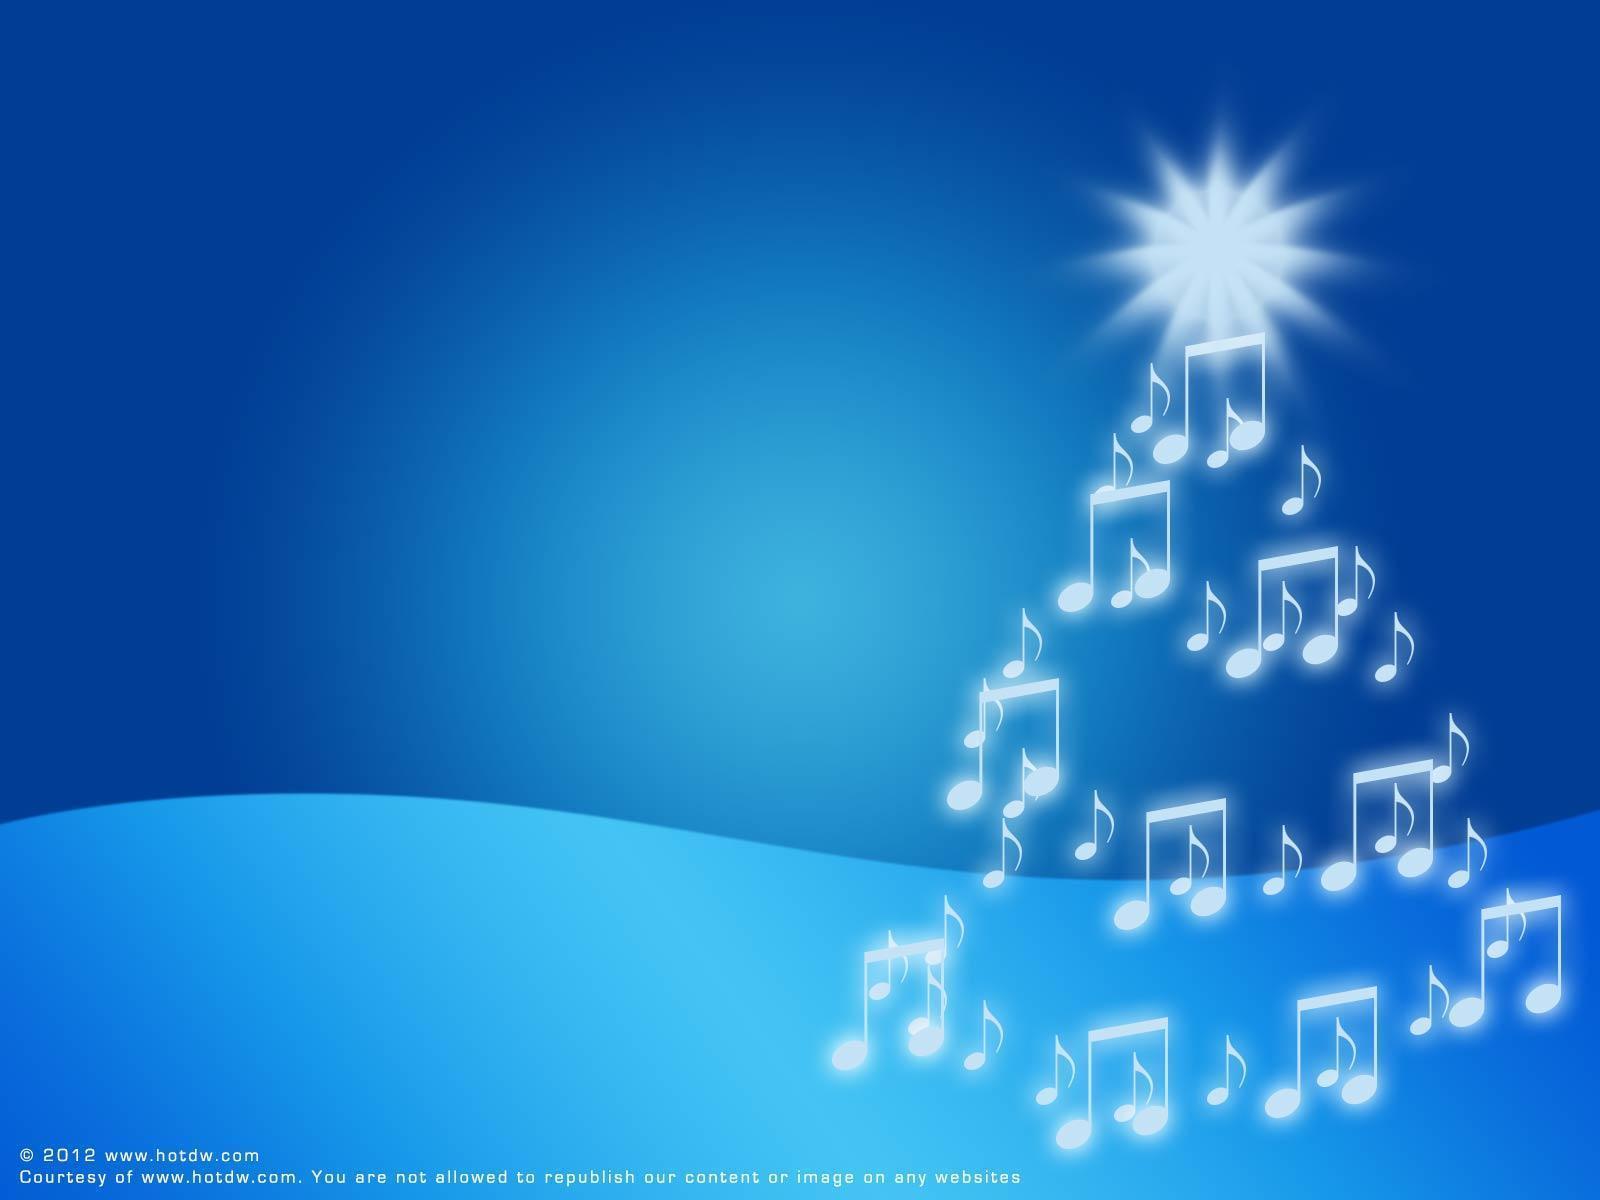 1000+ Christmas theme background music Miễn phí tải xuống cho video, phim  và dự án âm nhạc